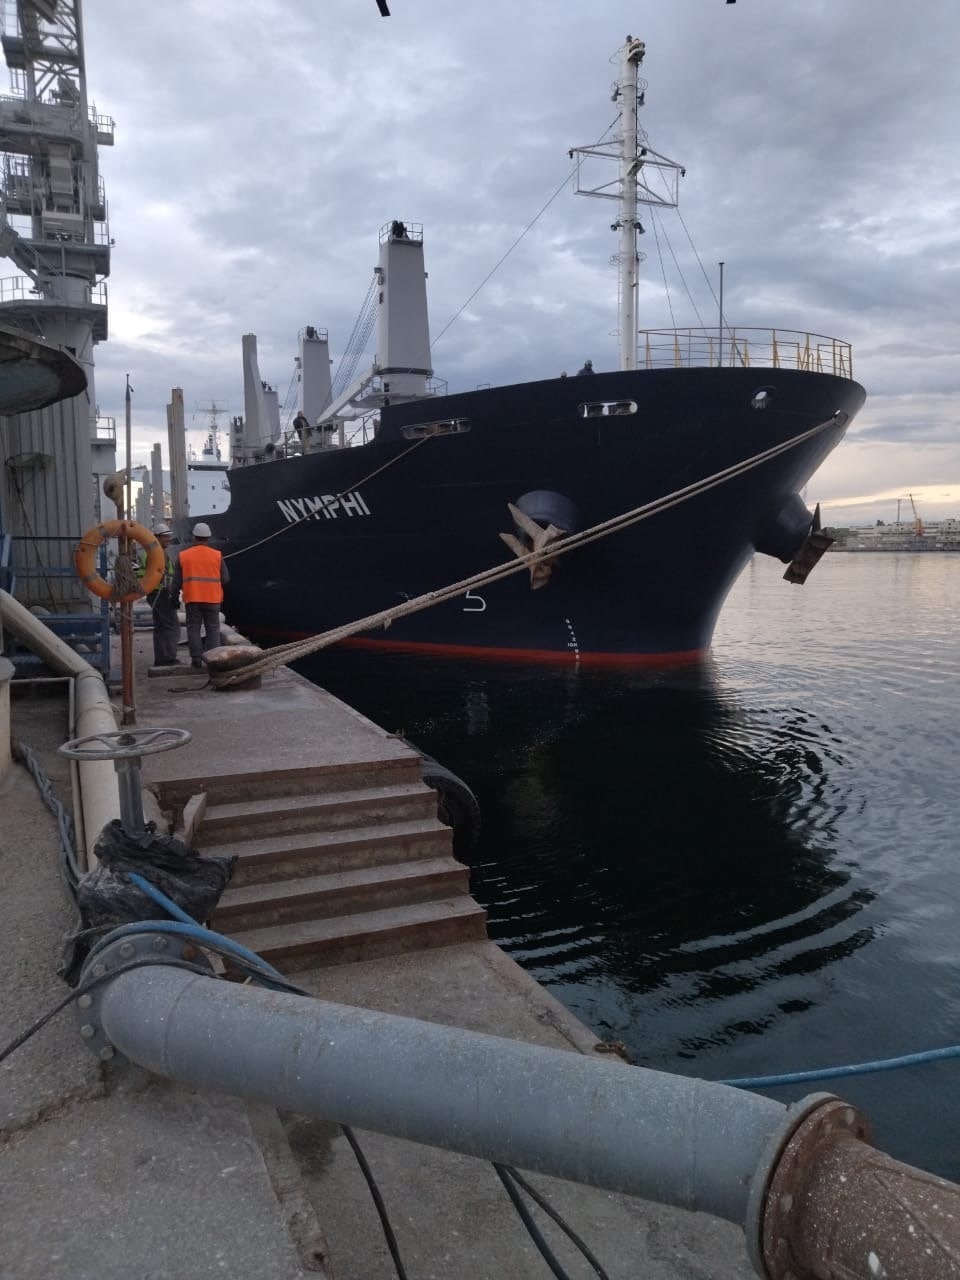 Ще вісім суден вийшли з портів Одещини. Всього експортували понад 4 млн тонн зерна